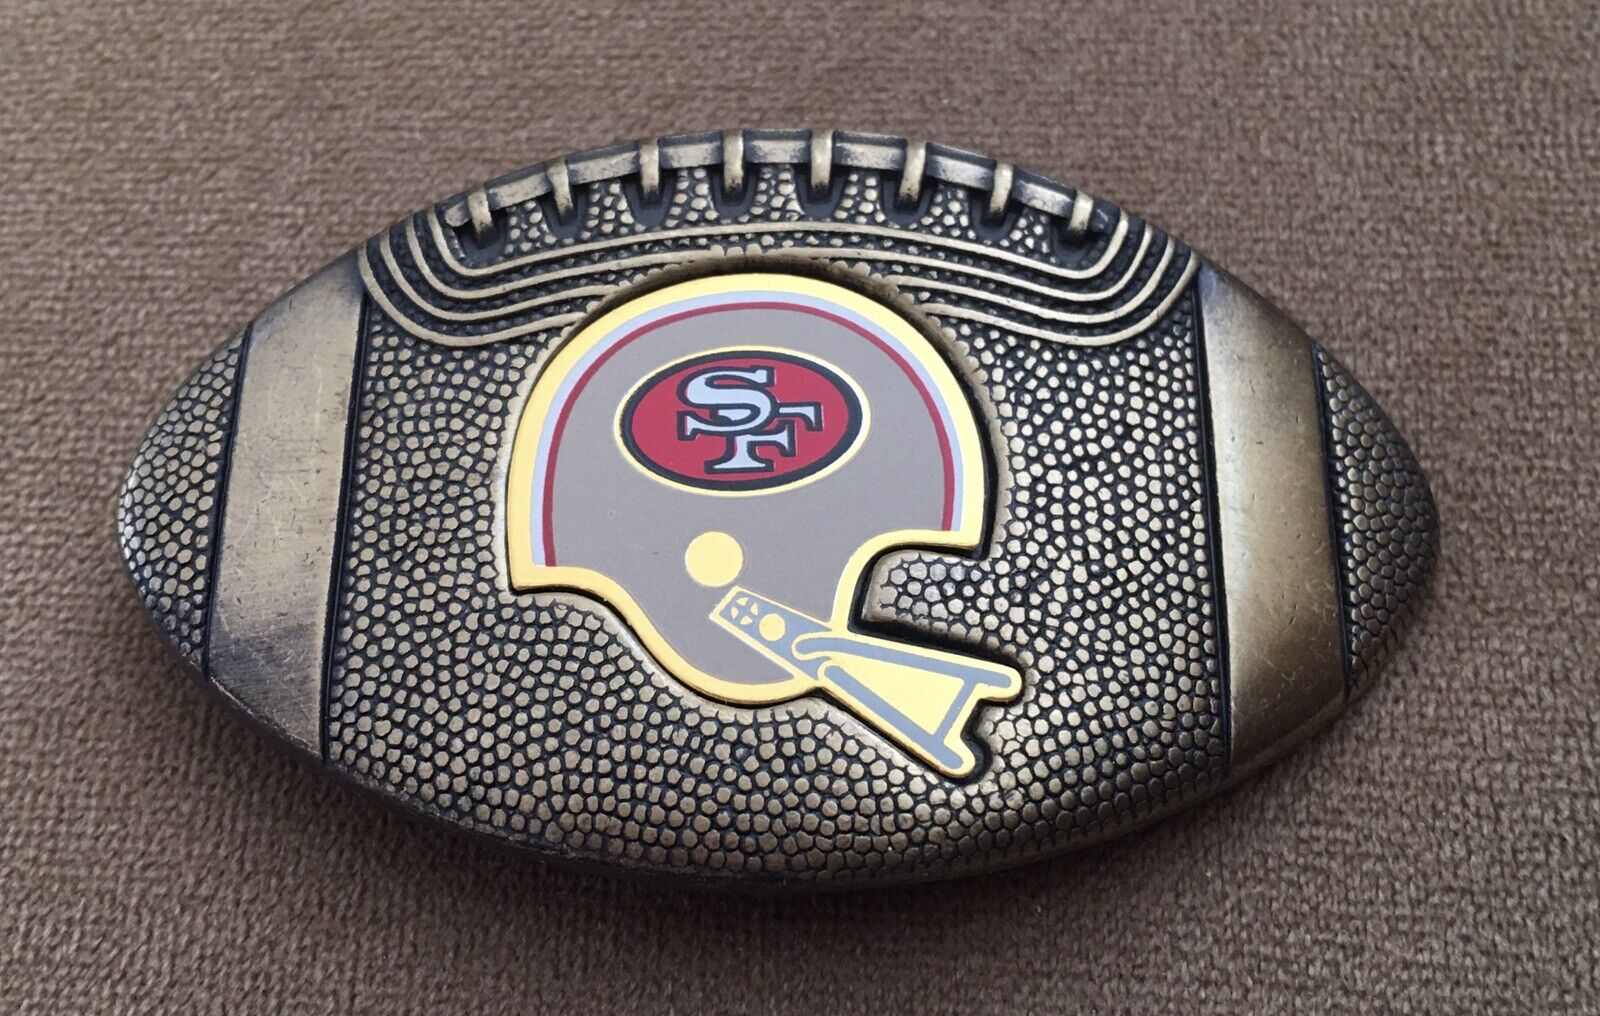 VTG 1979 Official NFL San Francisco 49ers Football Helmet Super Bowl Belt Buckle